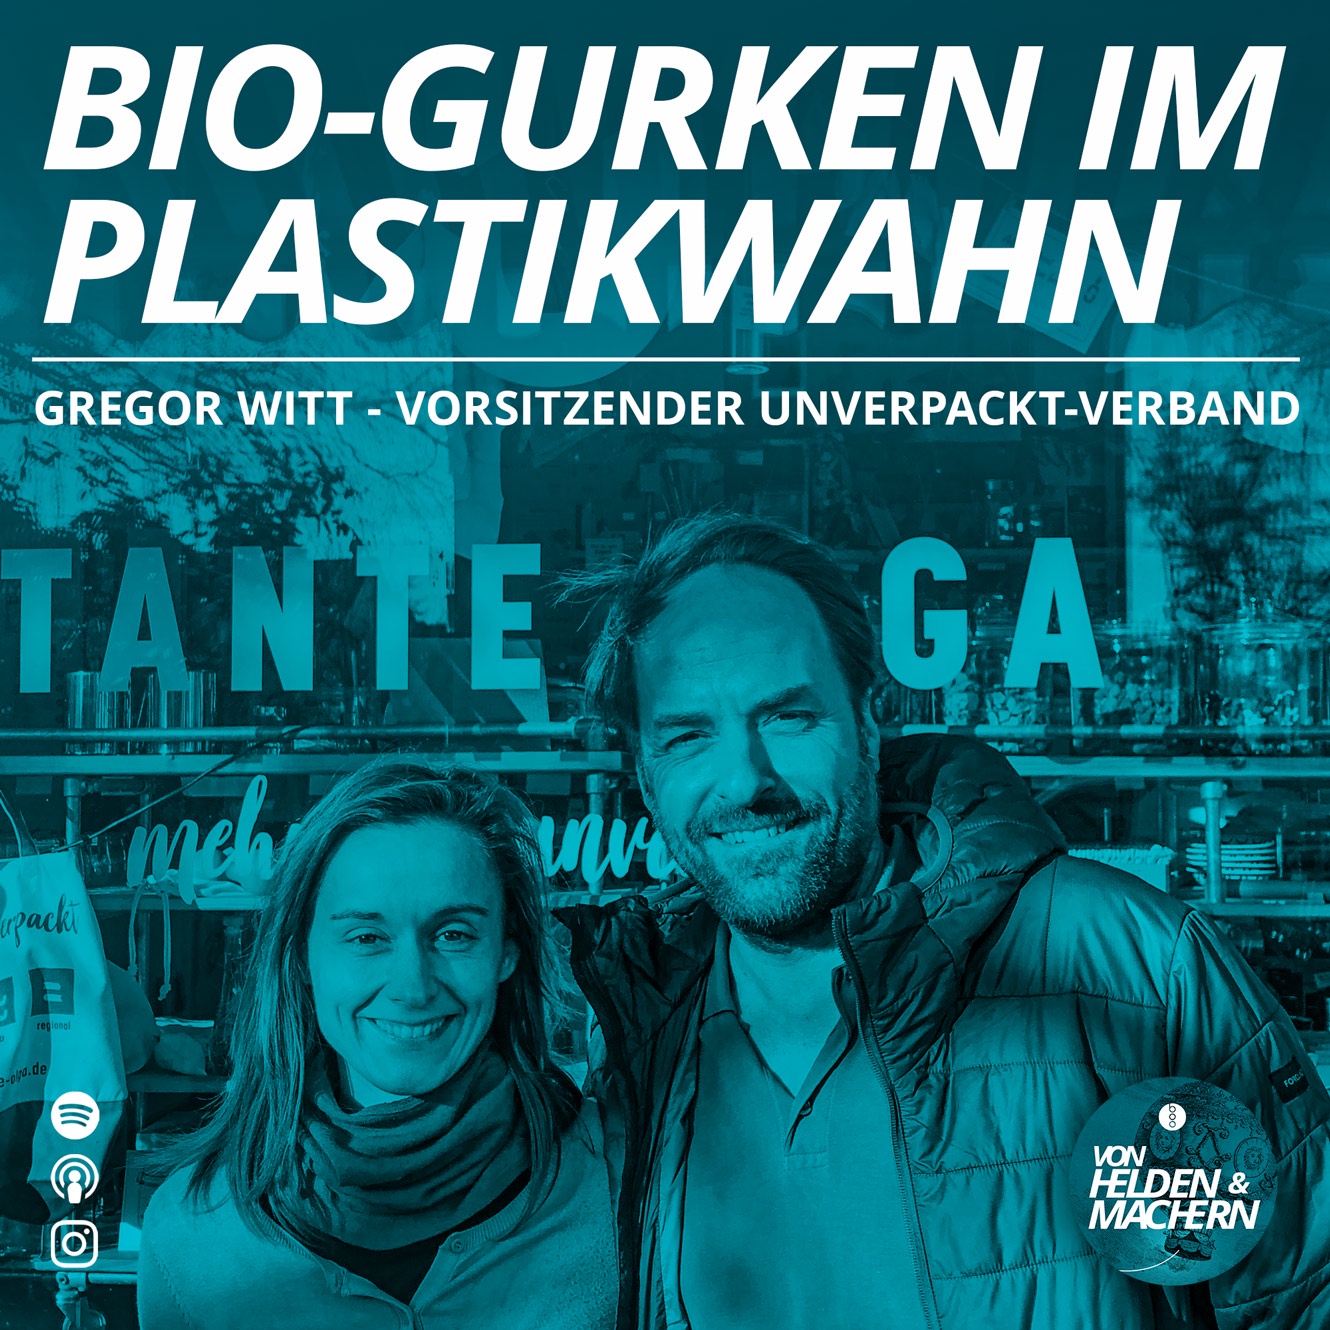 Bio-Gurken im Plastikwahn - UNVERPACKT ausgepackt.